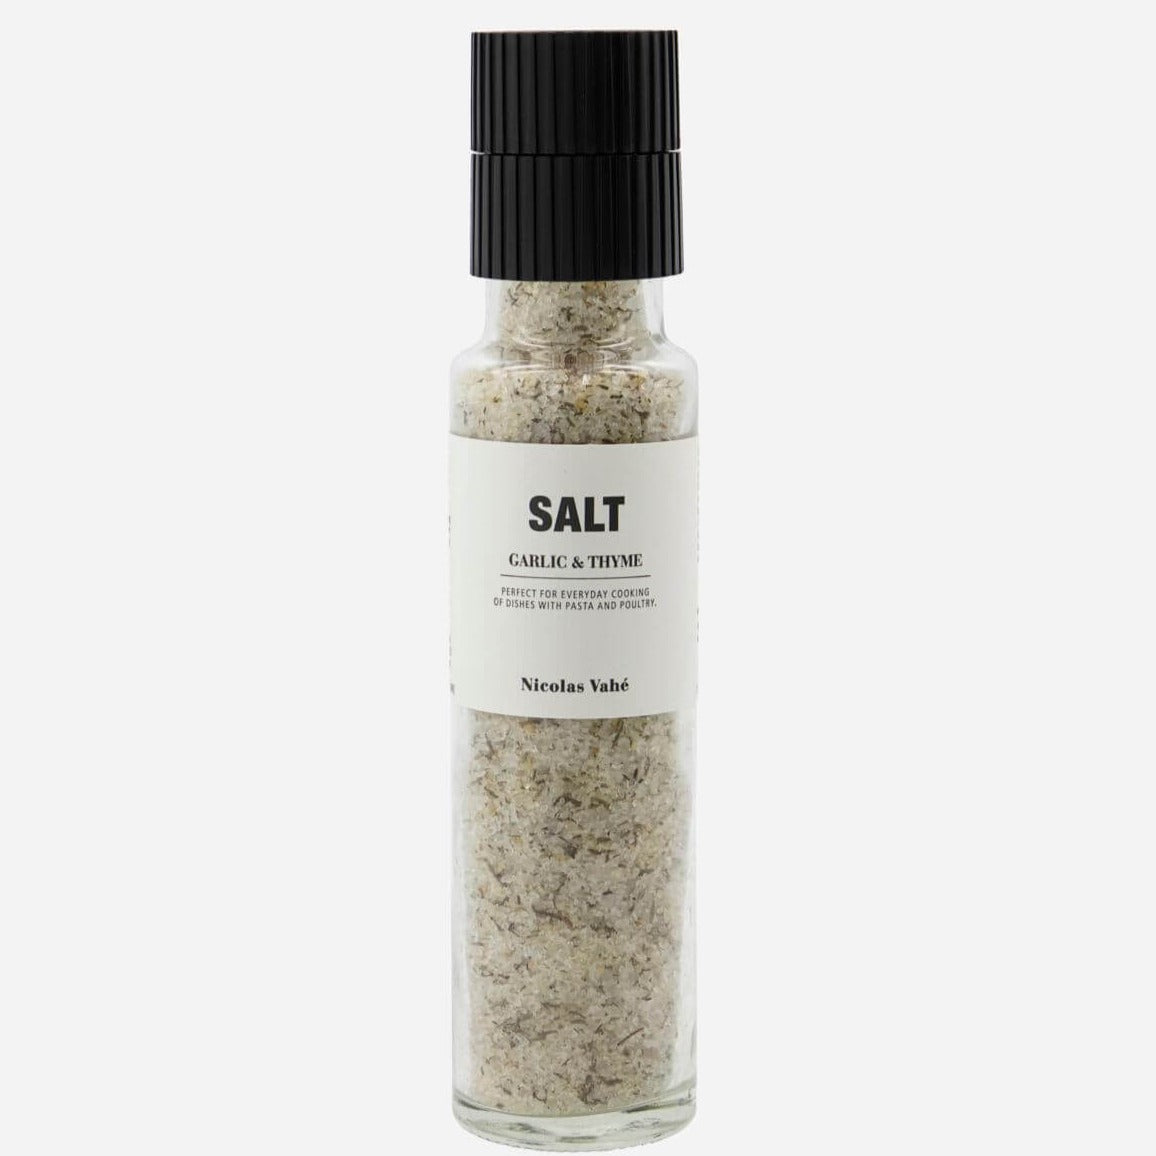 Salt - Hvítlaukur & Timjan